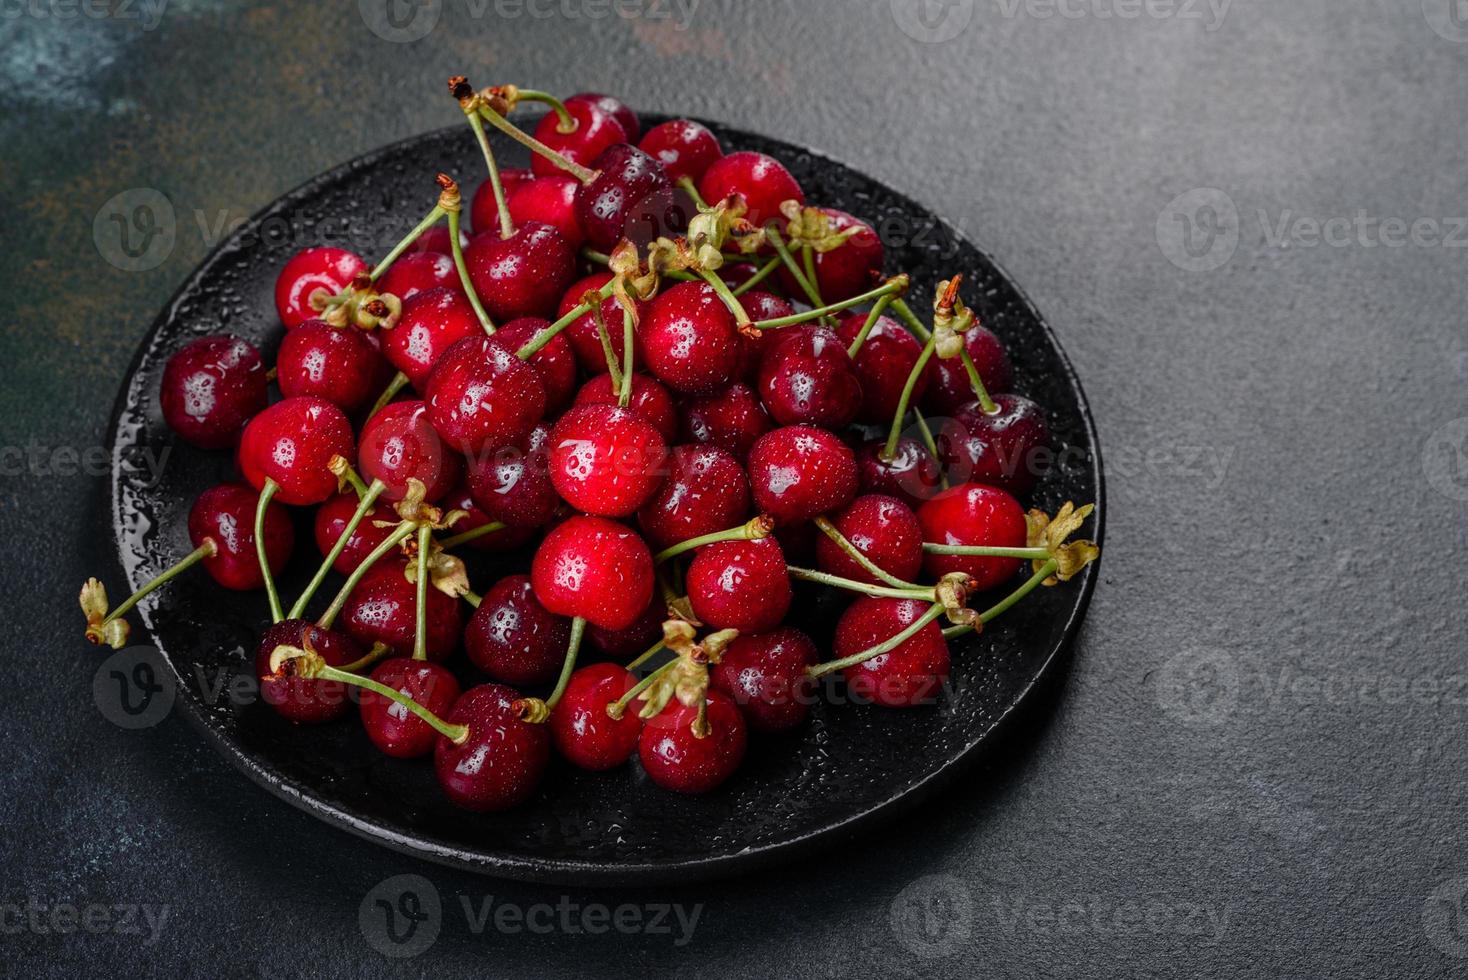 Frescas y deliciosas bayas de cerezo rojo brillante rasgadas en el jardín de verano foto